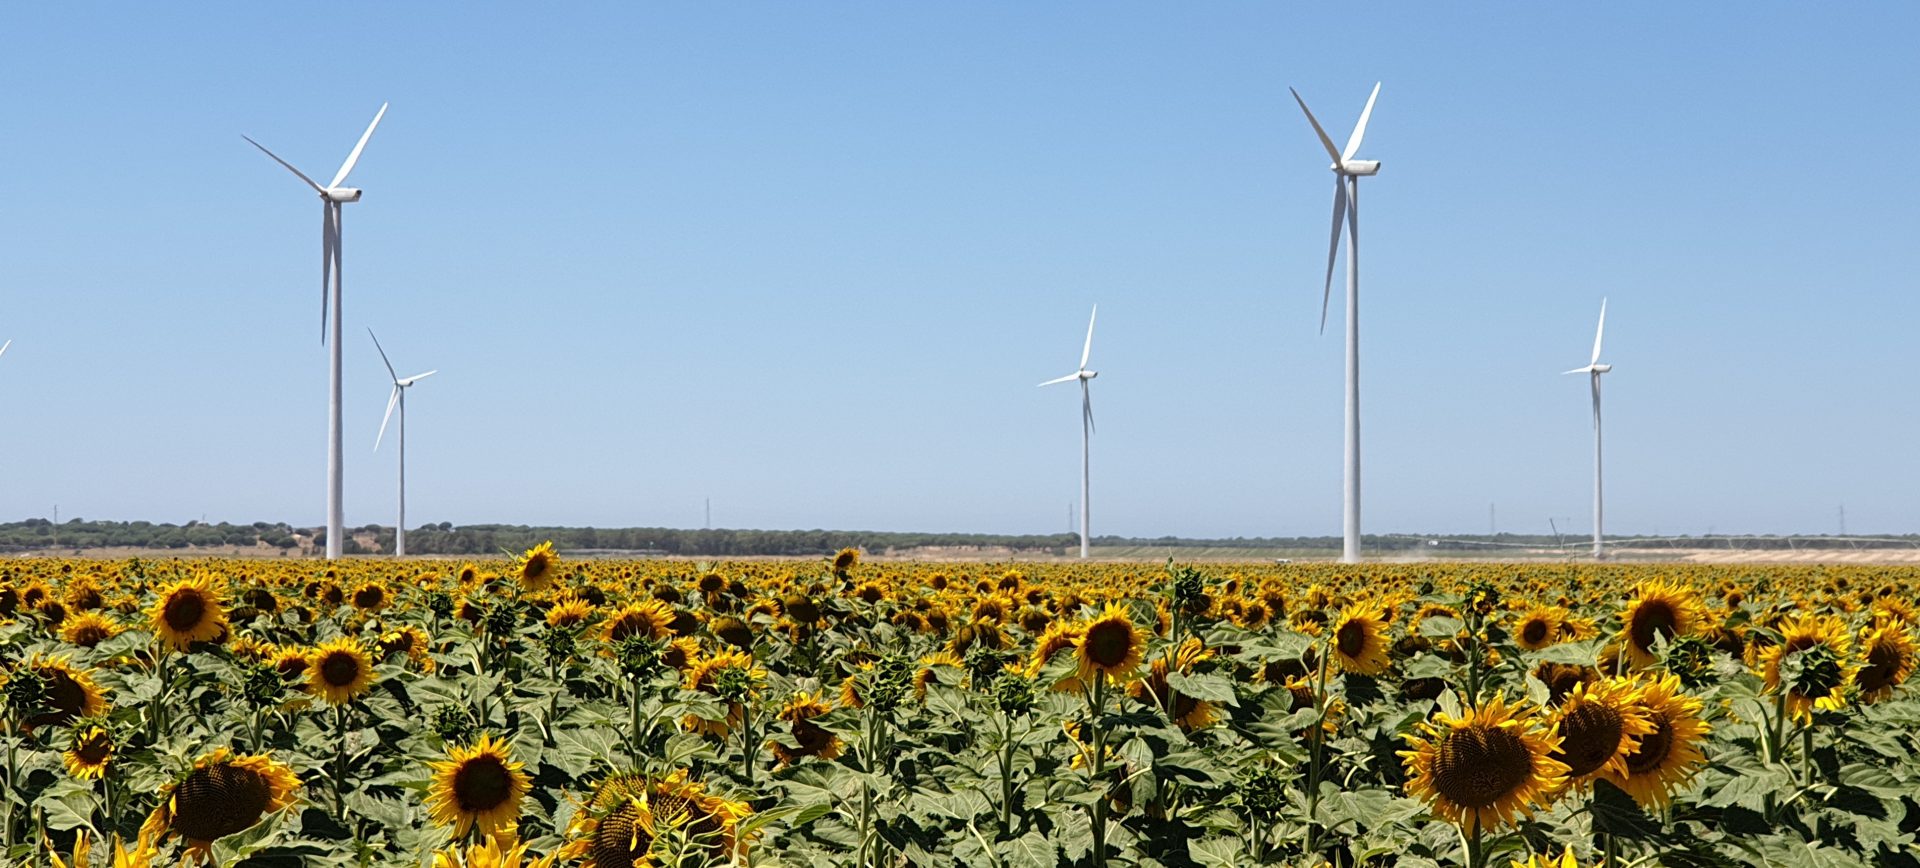 Die Entwicklung der Ökosysteme in der Wind- und Photovoltaikbranche